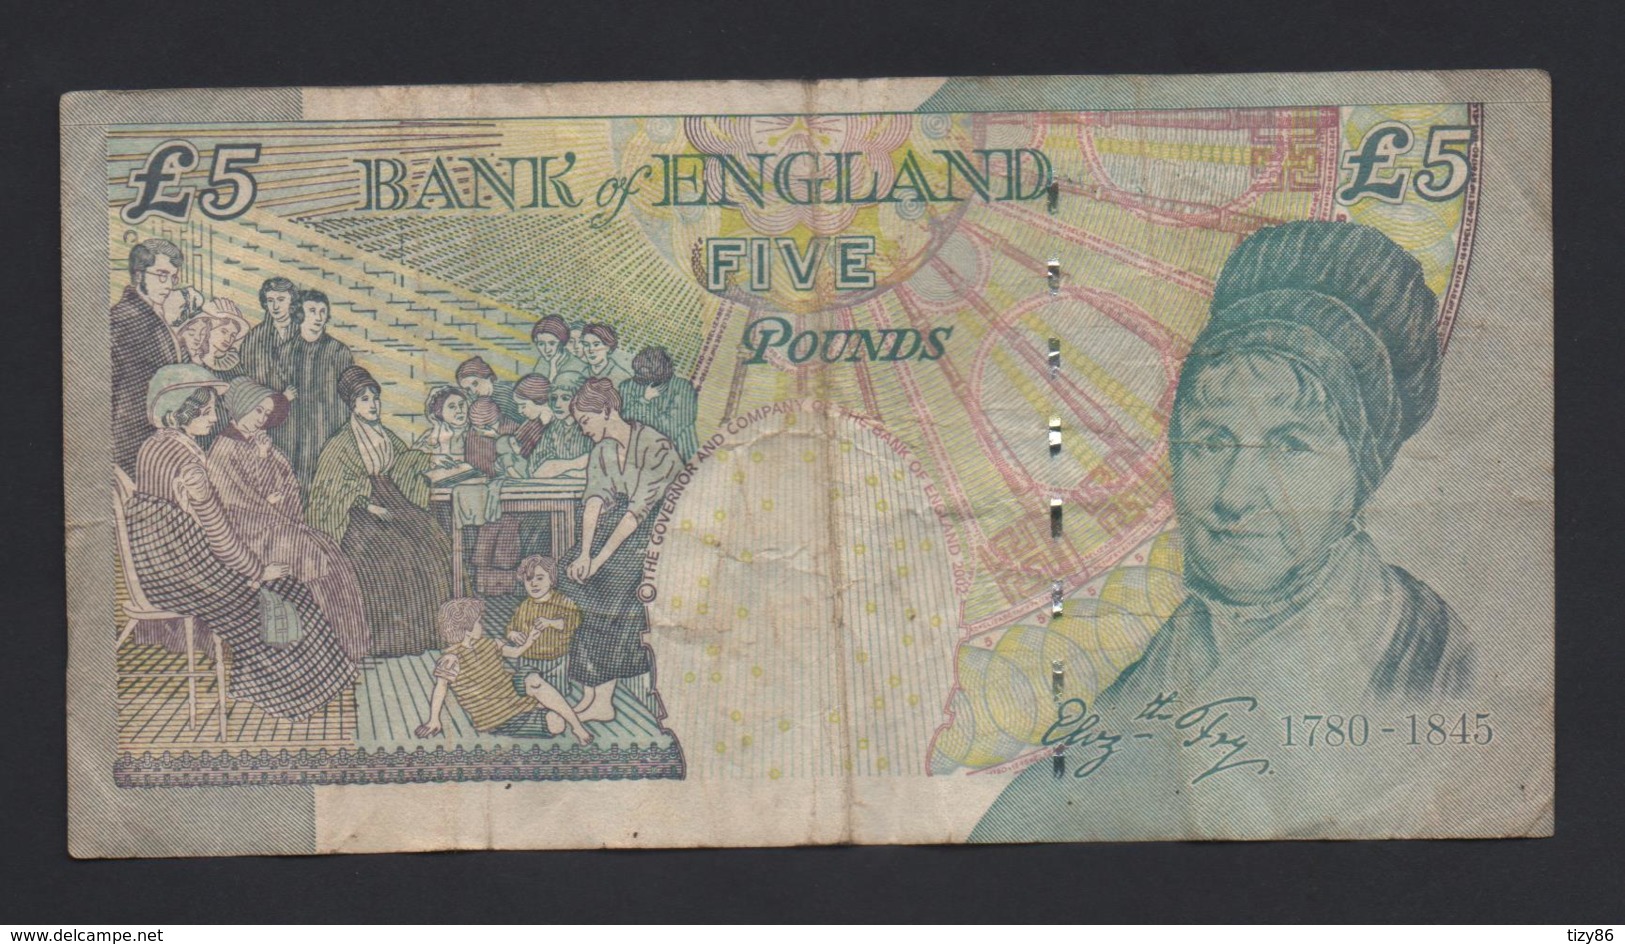 Banconota Gran Bretagna - 5 Pounds, 2002 (circolata) - 5 Pounds